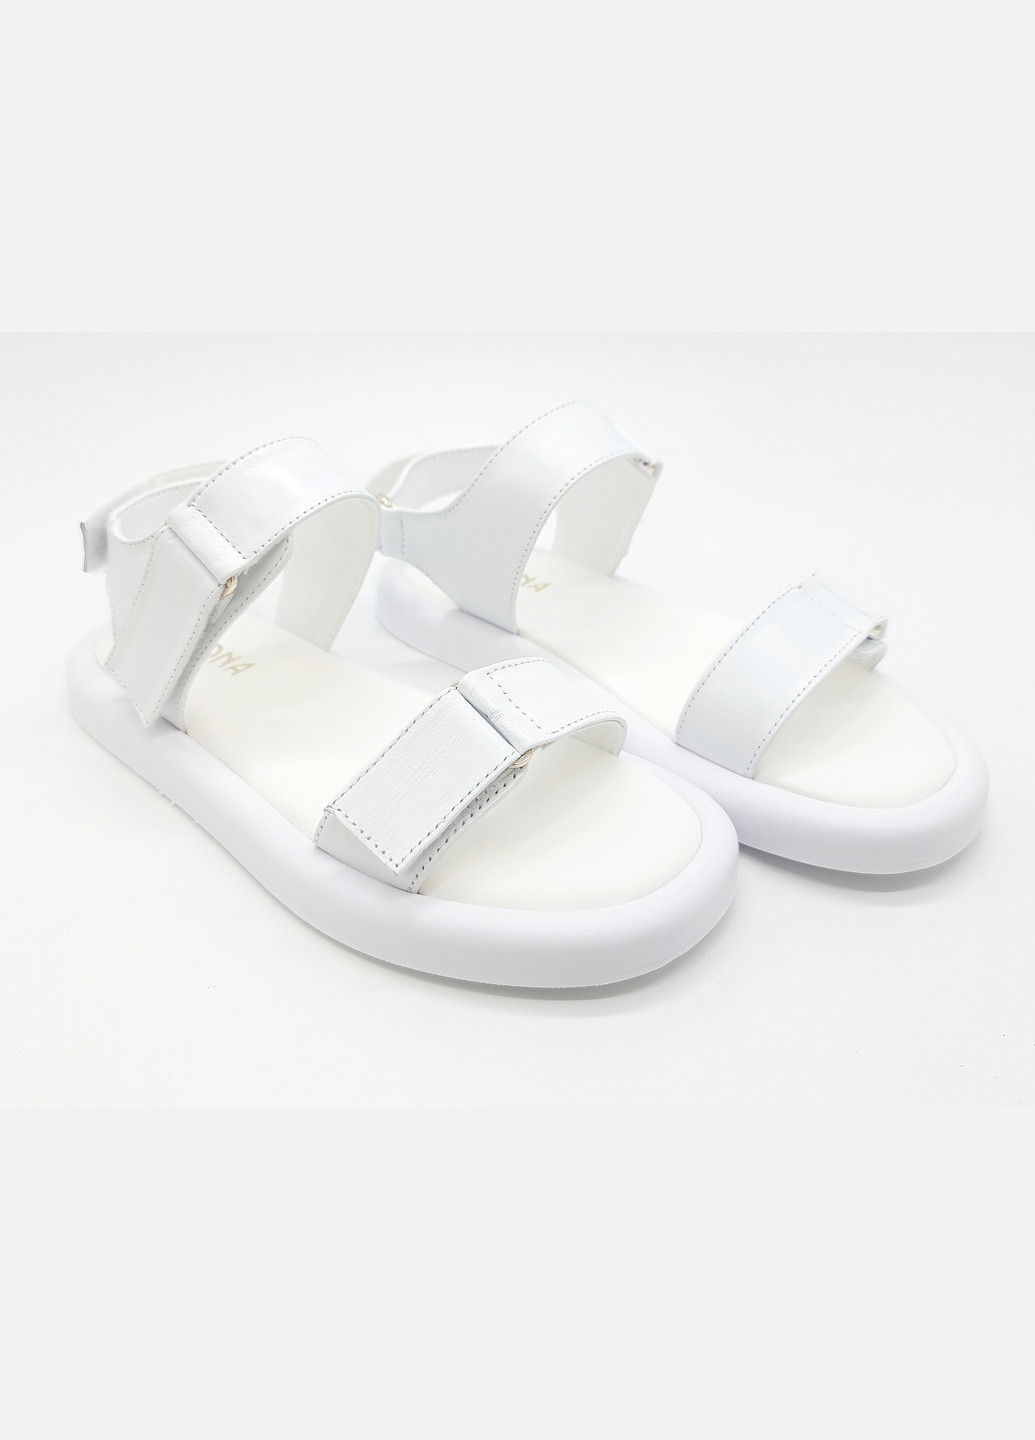 Белые босоножки женские белые кожаные te-18-15 24,5 см (р) Teona